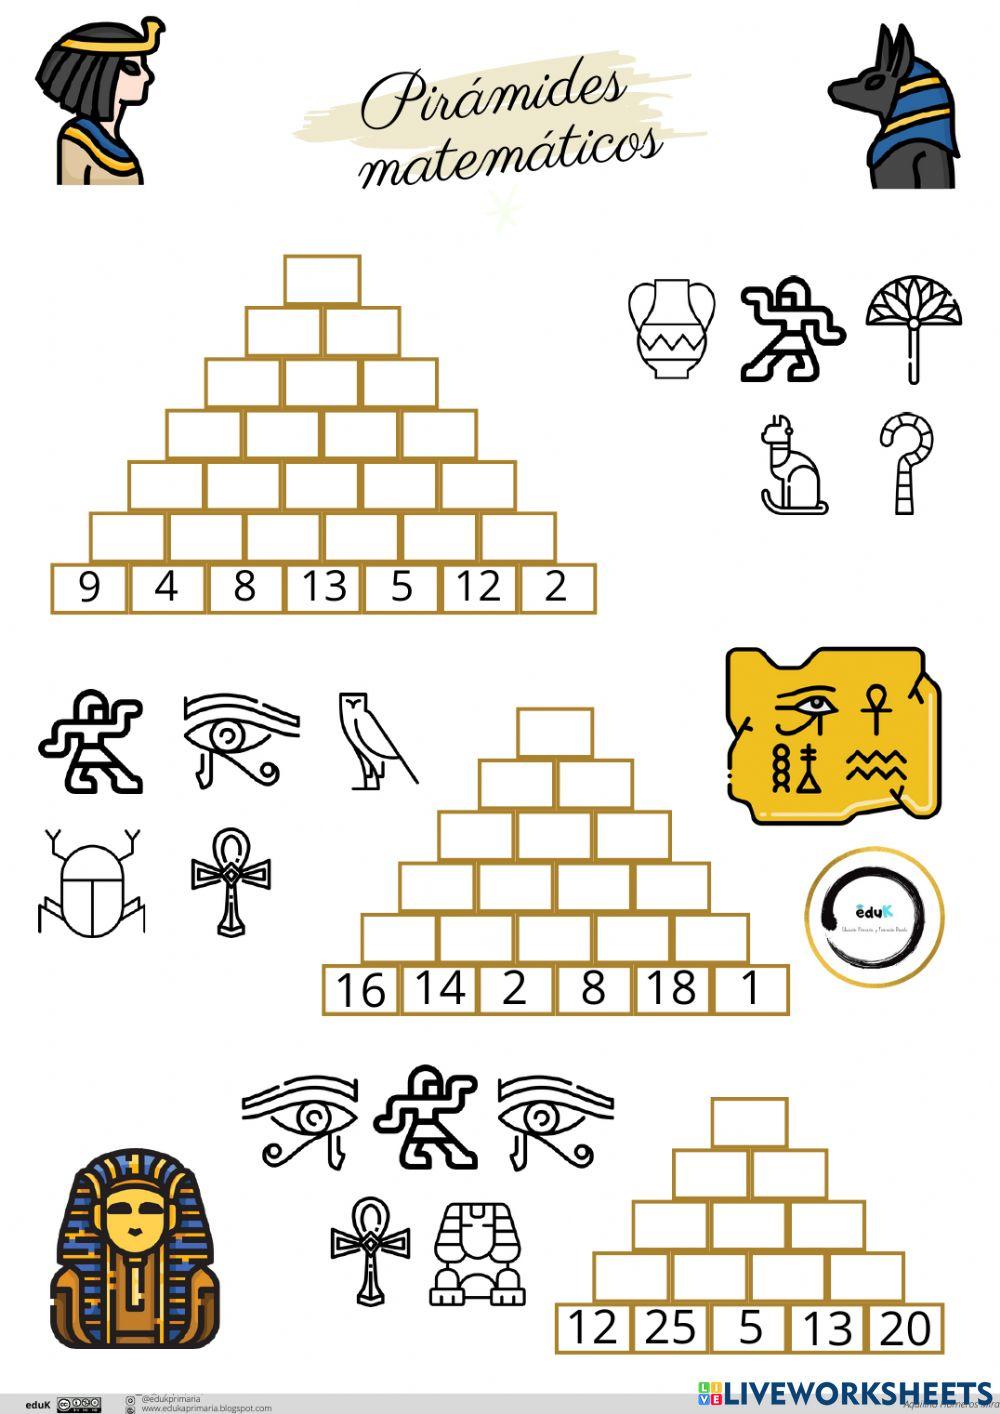 Pirámides matemáticas